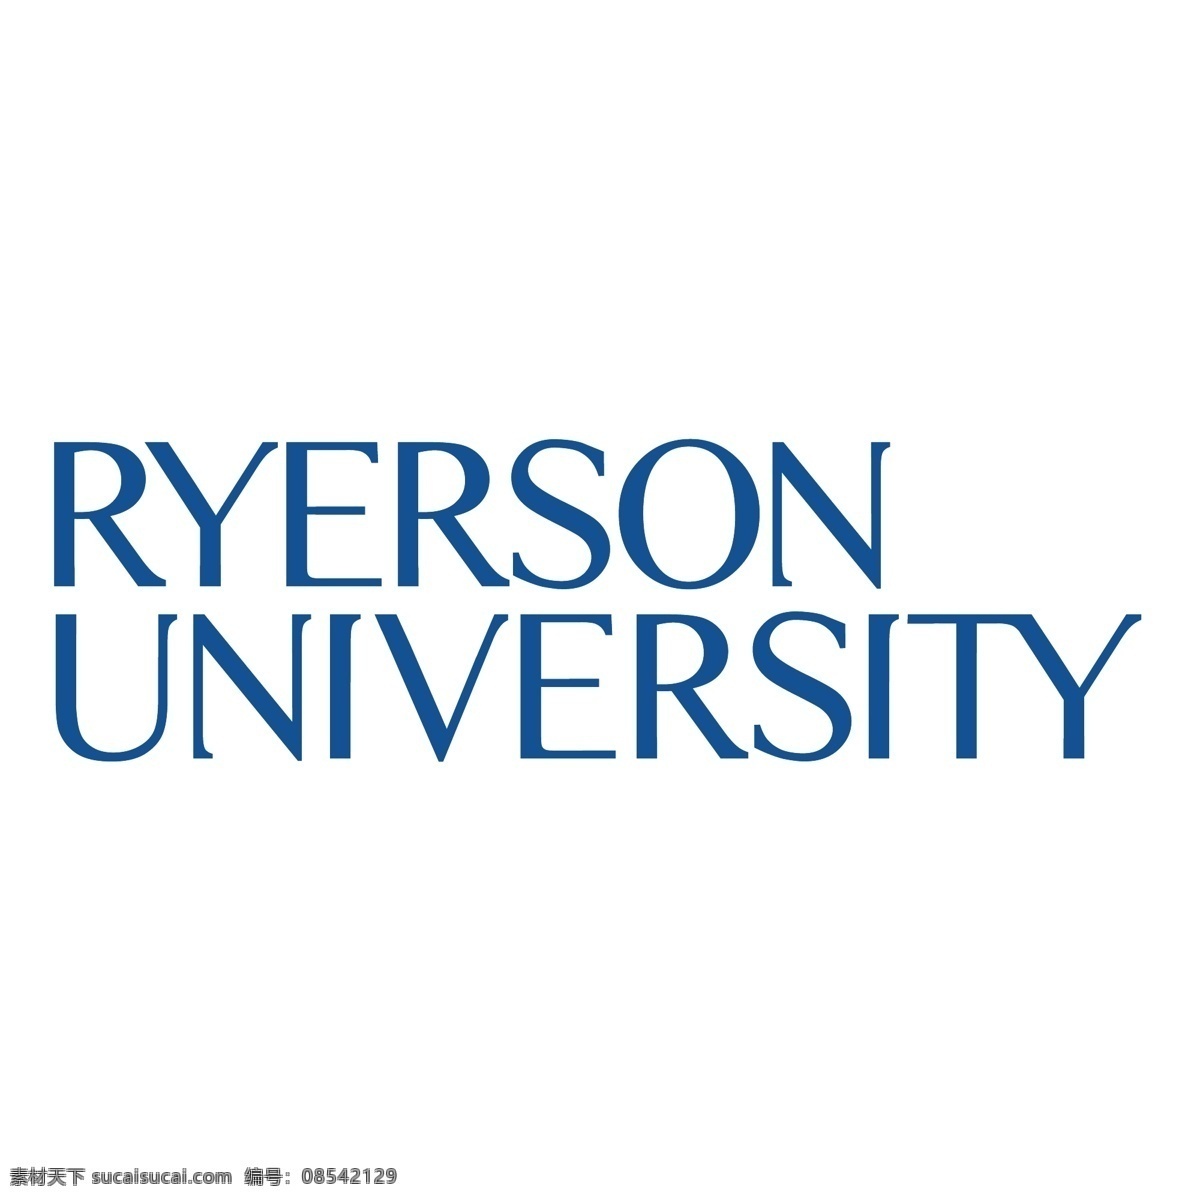 瑞尔森大学1 大学 图像 怀雅逊大学 瑞尔森大学 向量 向量自由大学 大学的图片 设计大学 自由 艺术 免费 矢量 图形 建筑家居